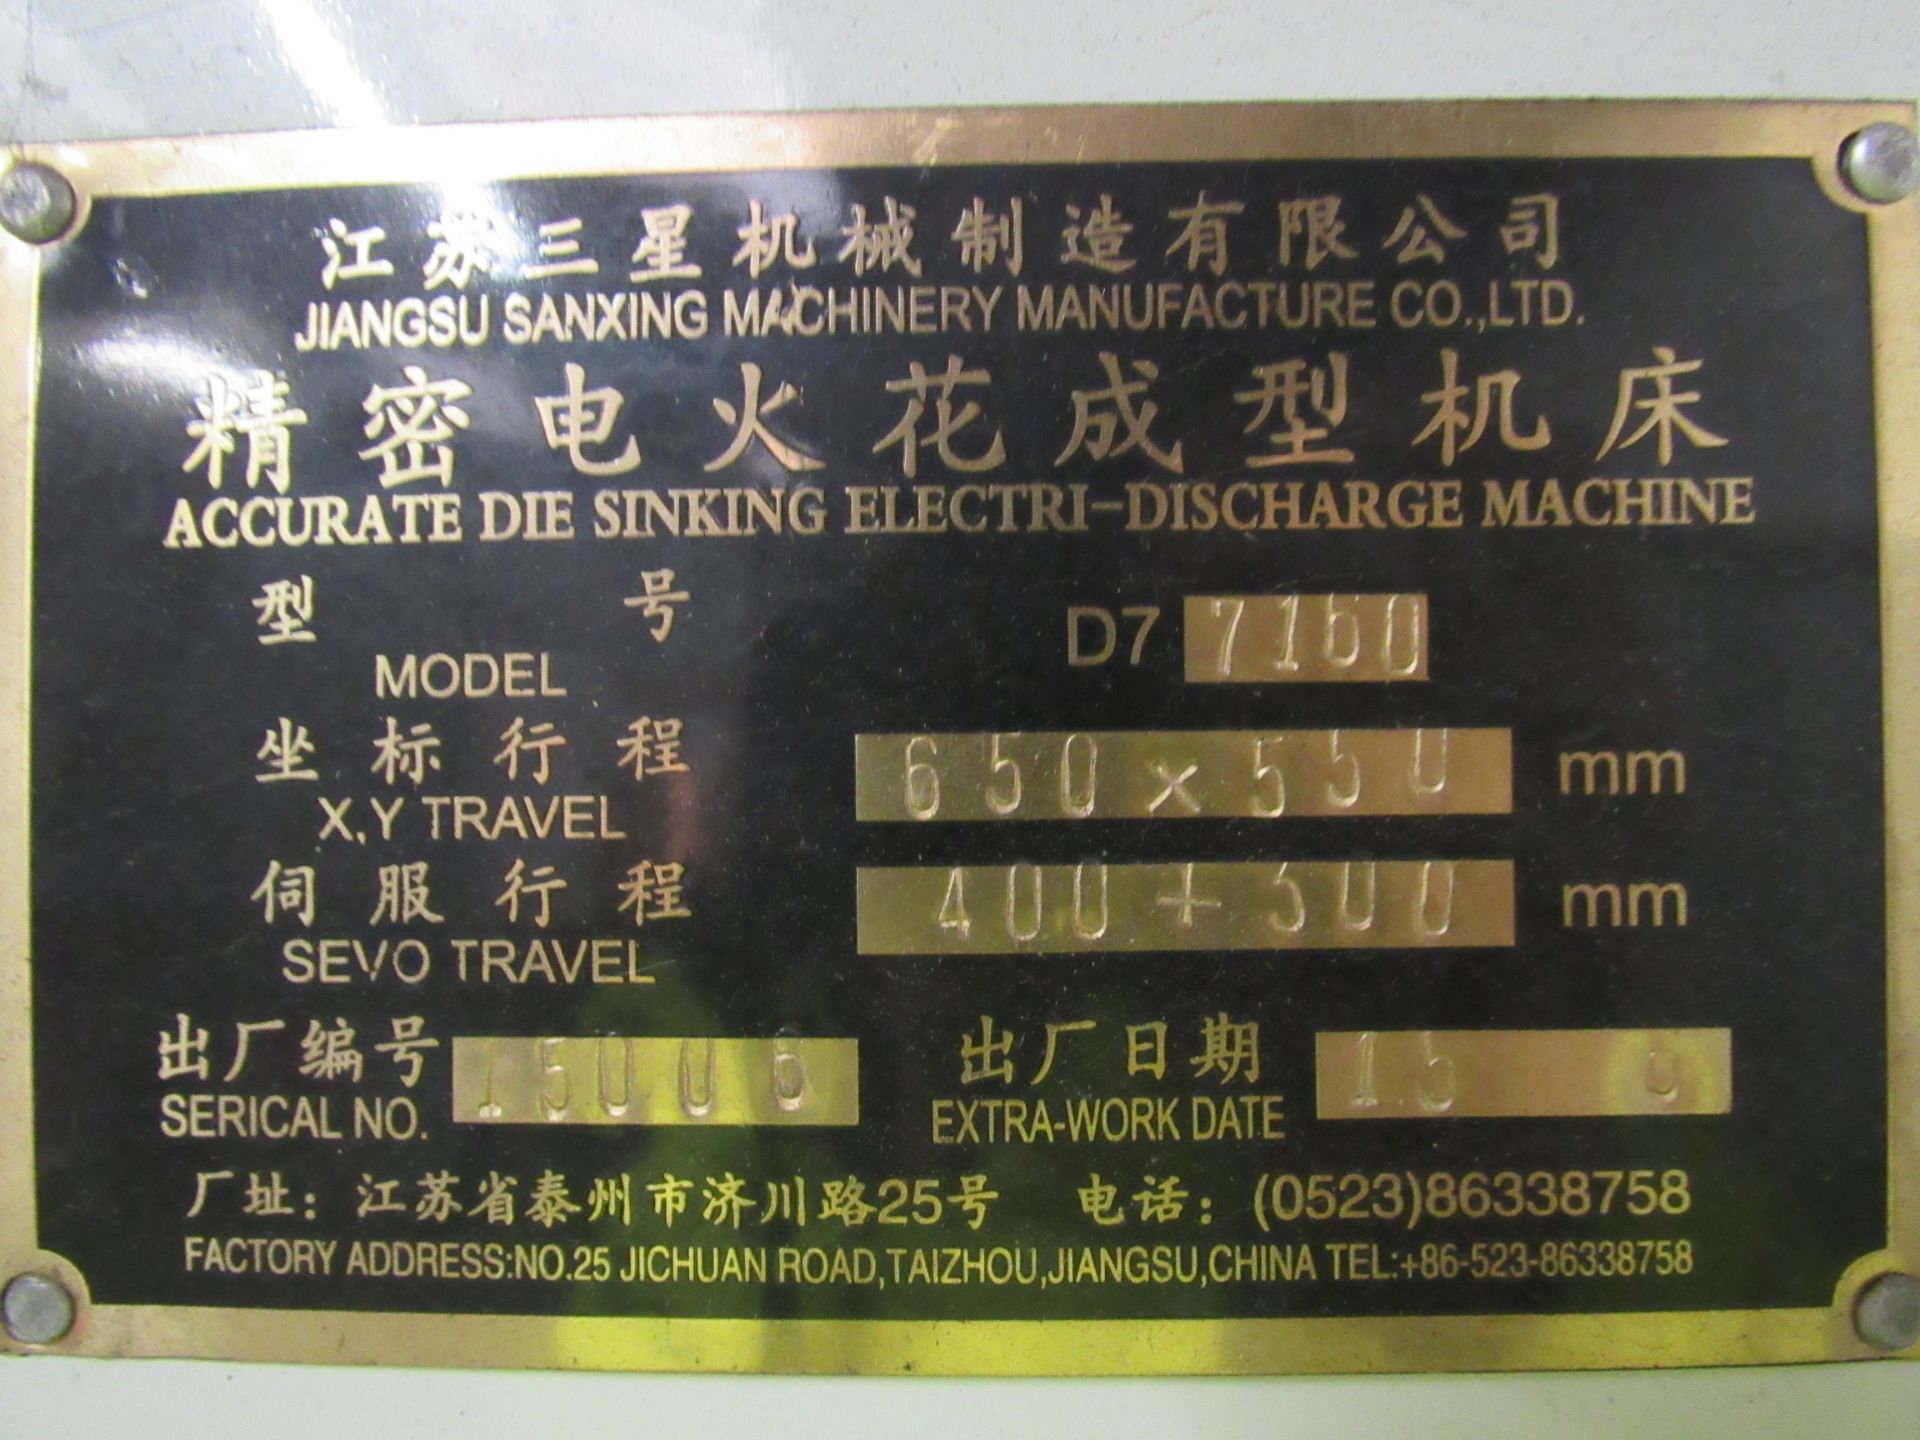 Jiangsu Sanxing D7/7/160 Electro Die Sinker, Seria - Image 7 of 10